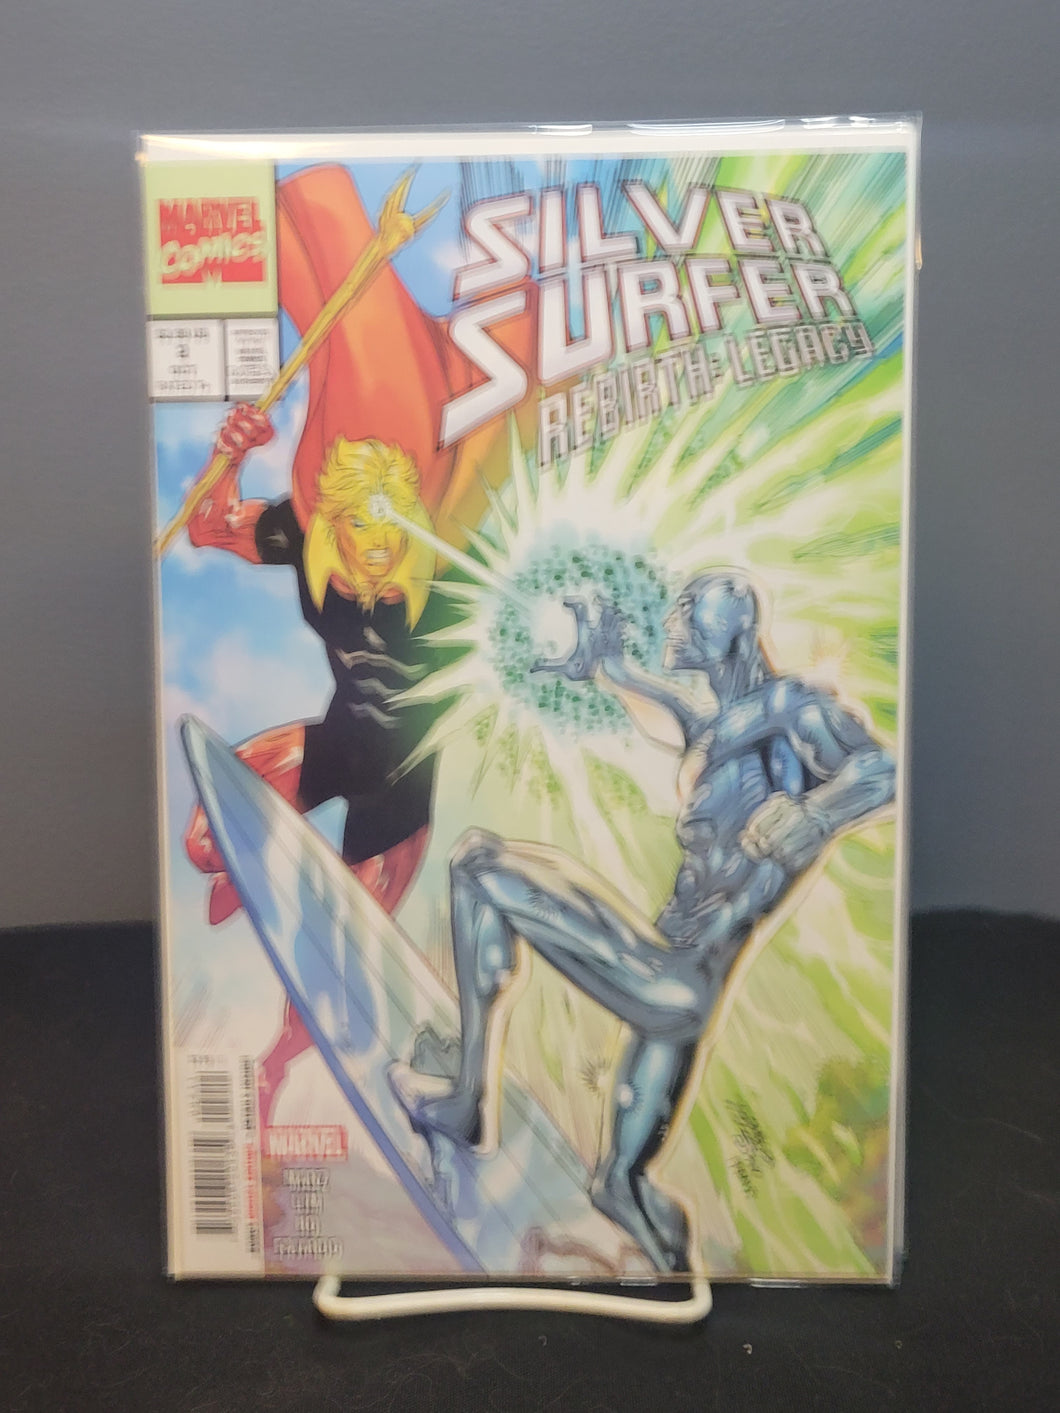 Silver Surfer Rebirth Legacy #2